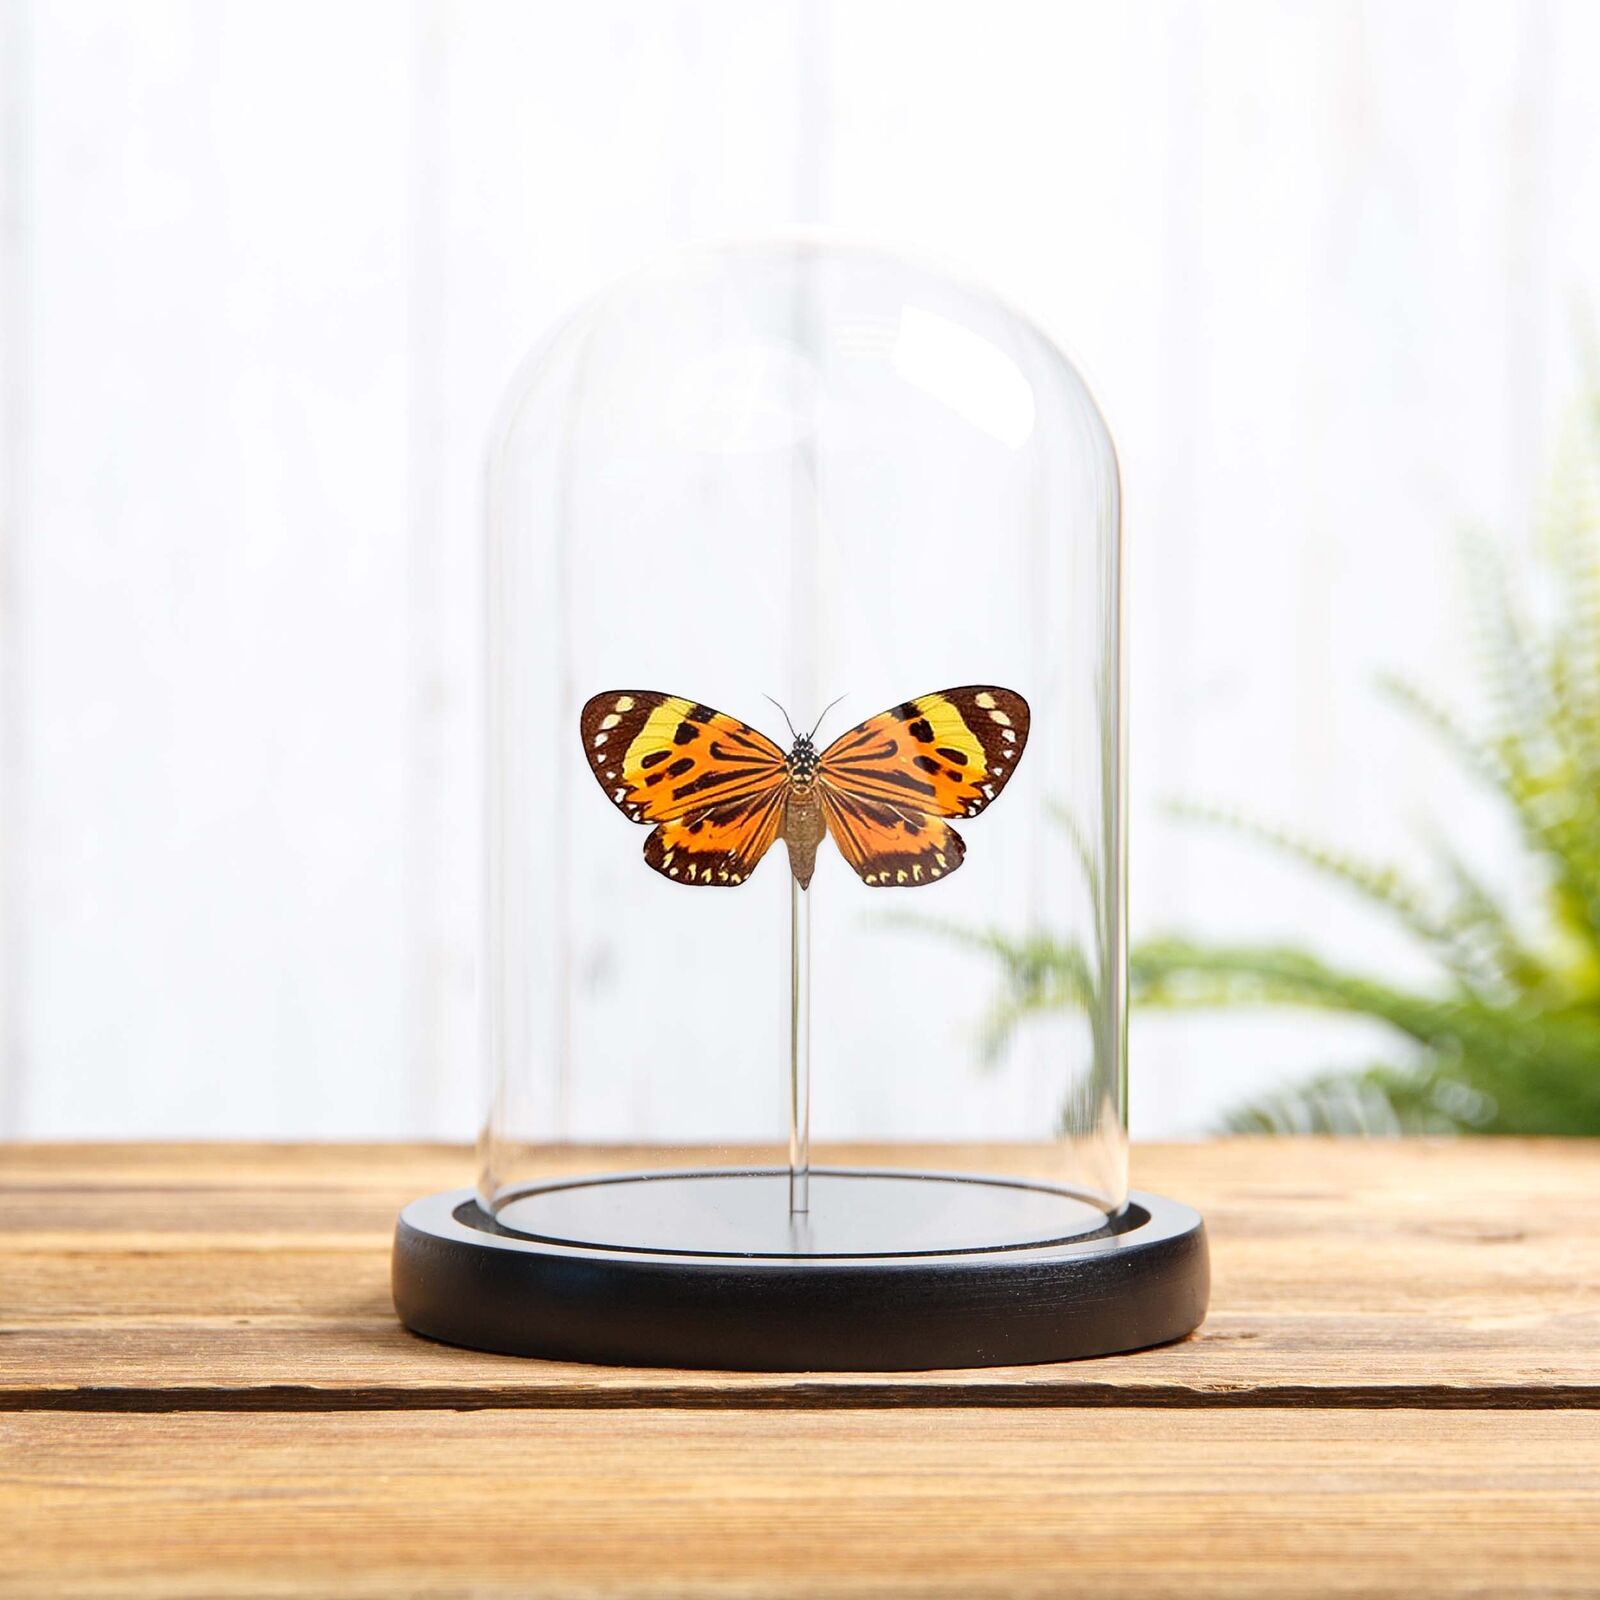 Boisduval\'s Tiger Taxidermy Moth in Glass Dome (Chetone histrio)